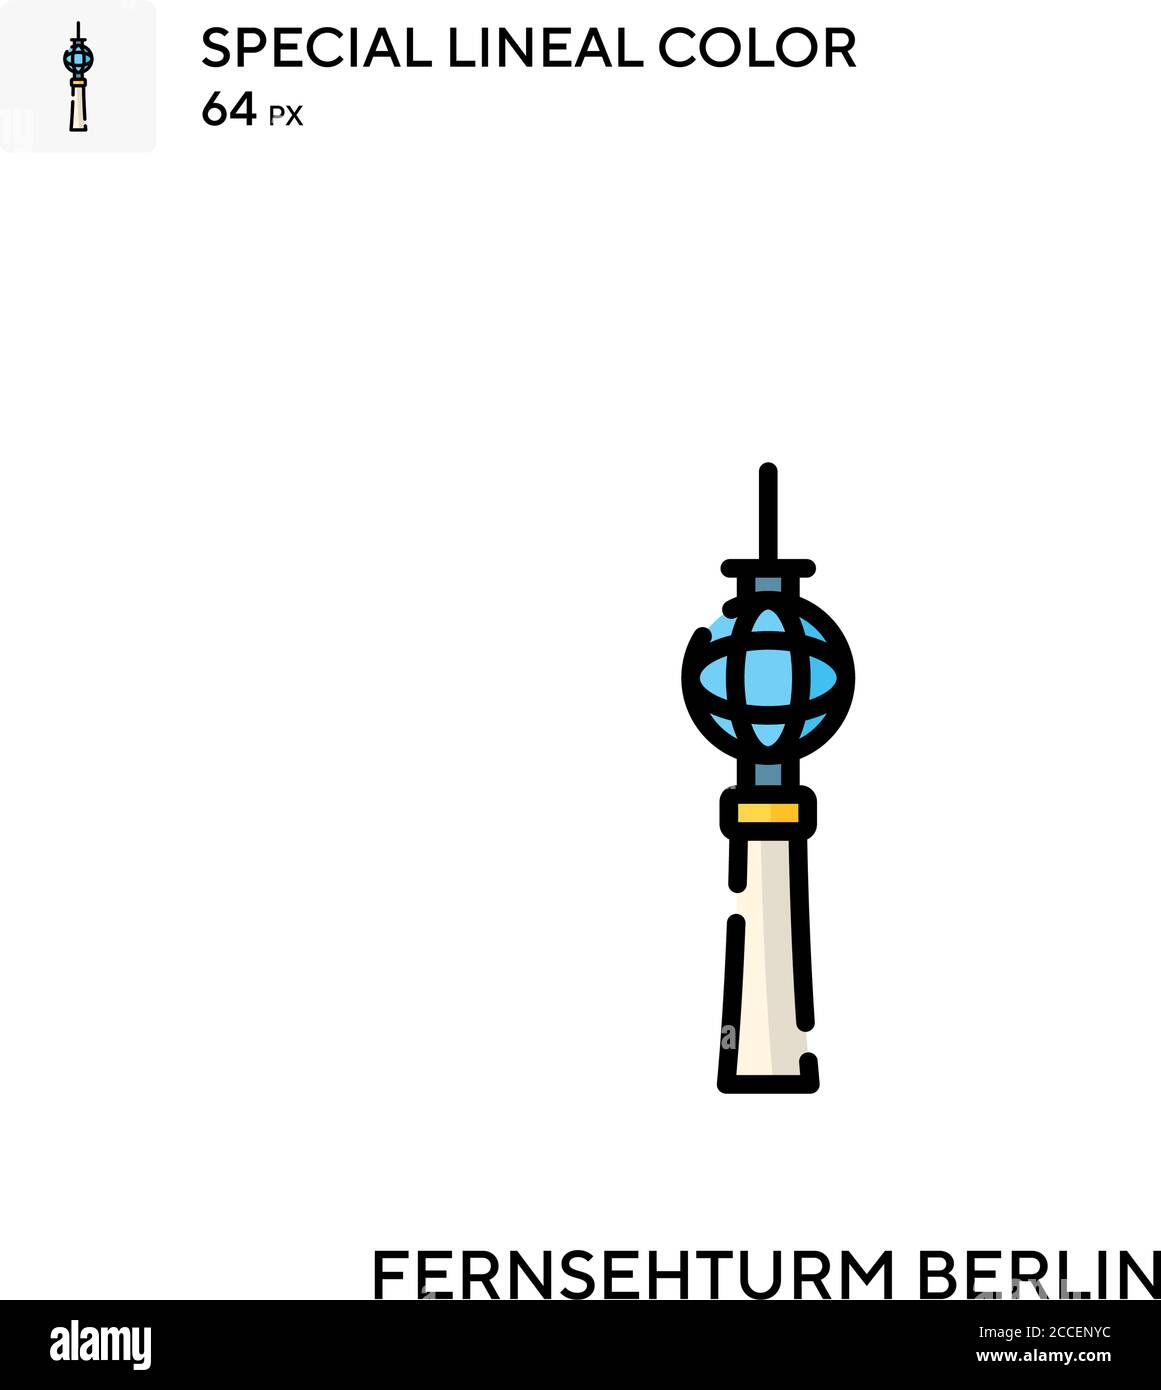 Fernsehturm berlin icône de couleur spéciale de lineal. Modèle de conception de symbole d'illustration pour élément d'interface utilisateur Web mobile. Illustration de Vecteur